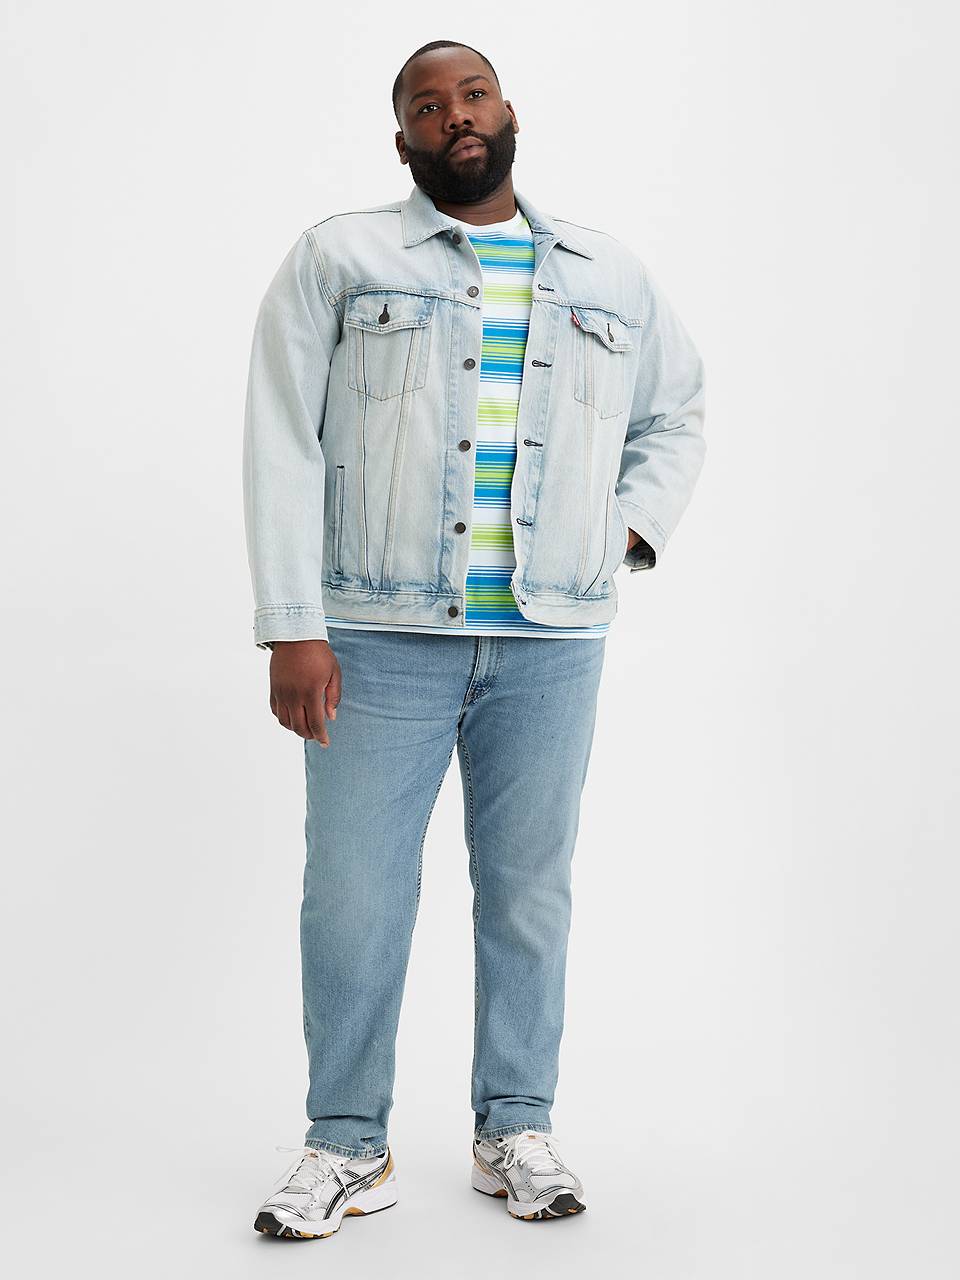 Big & Tall Jeans: Shop Men's Jeans & Pants Styles | Levi's® US